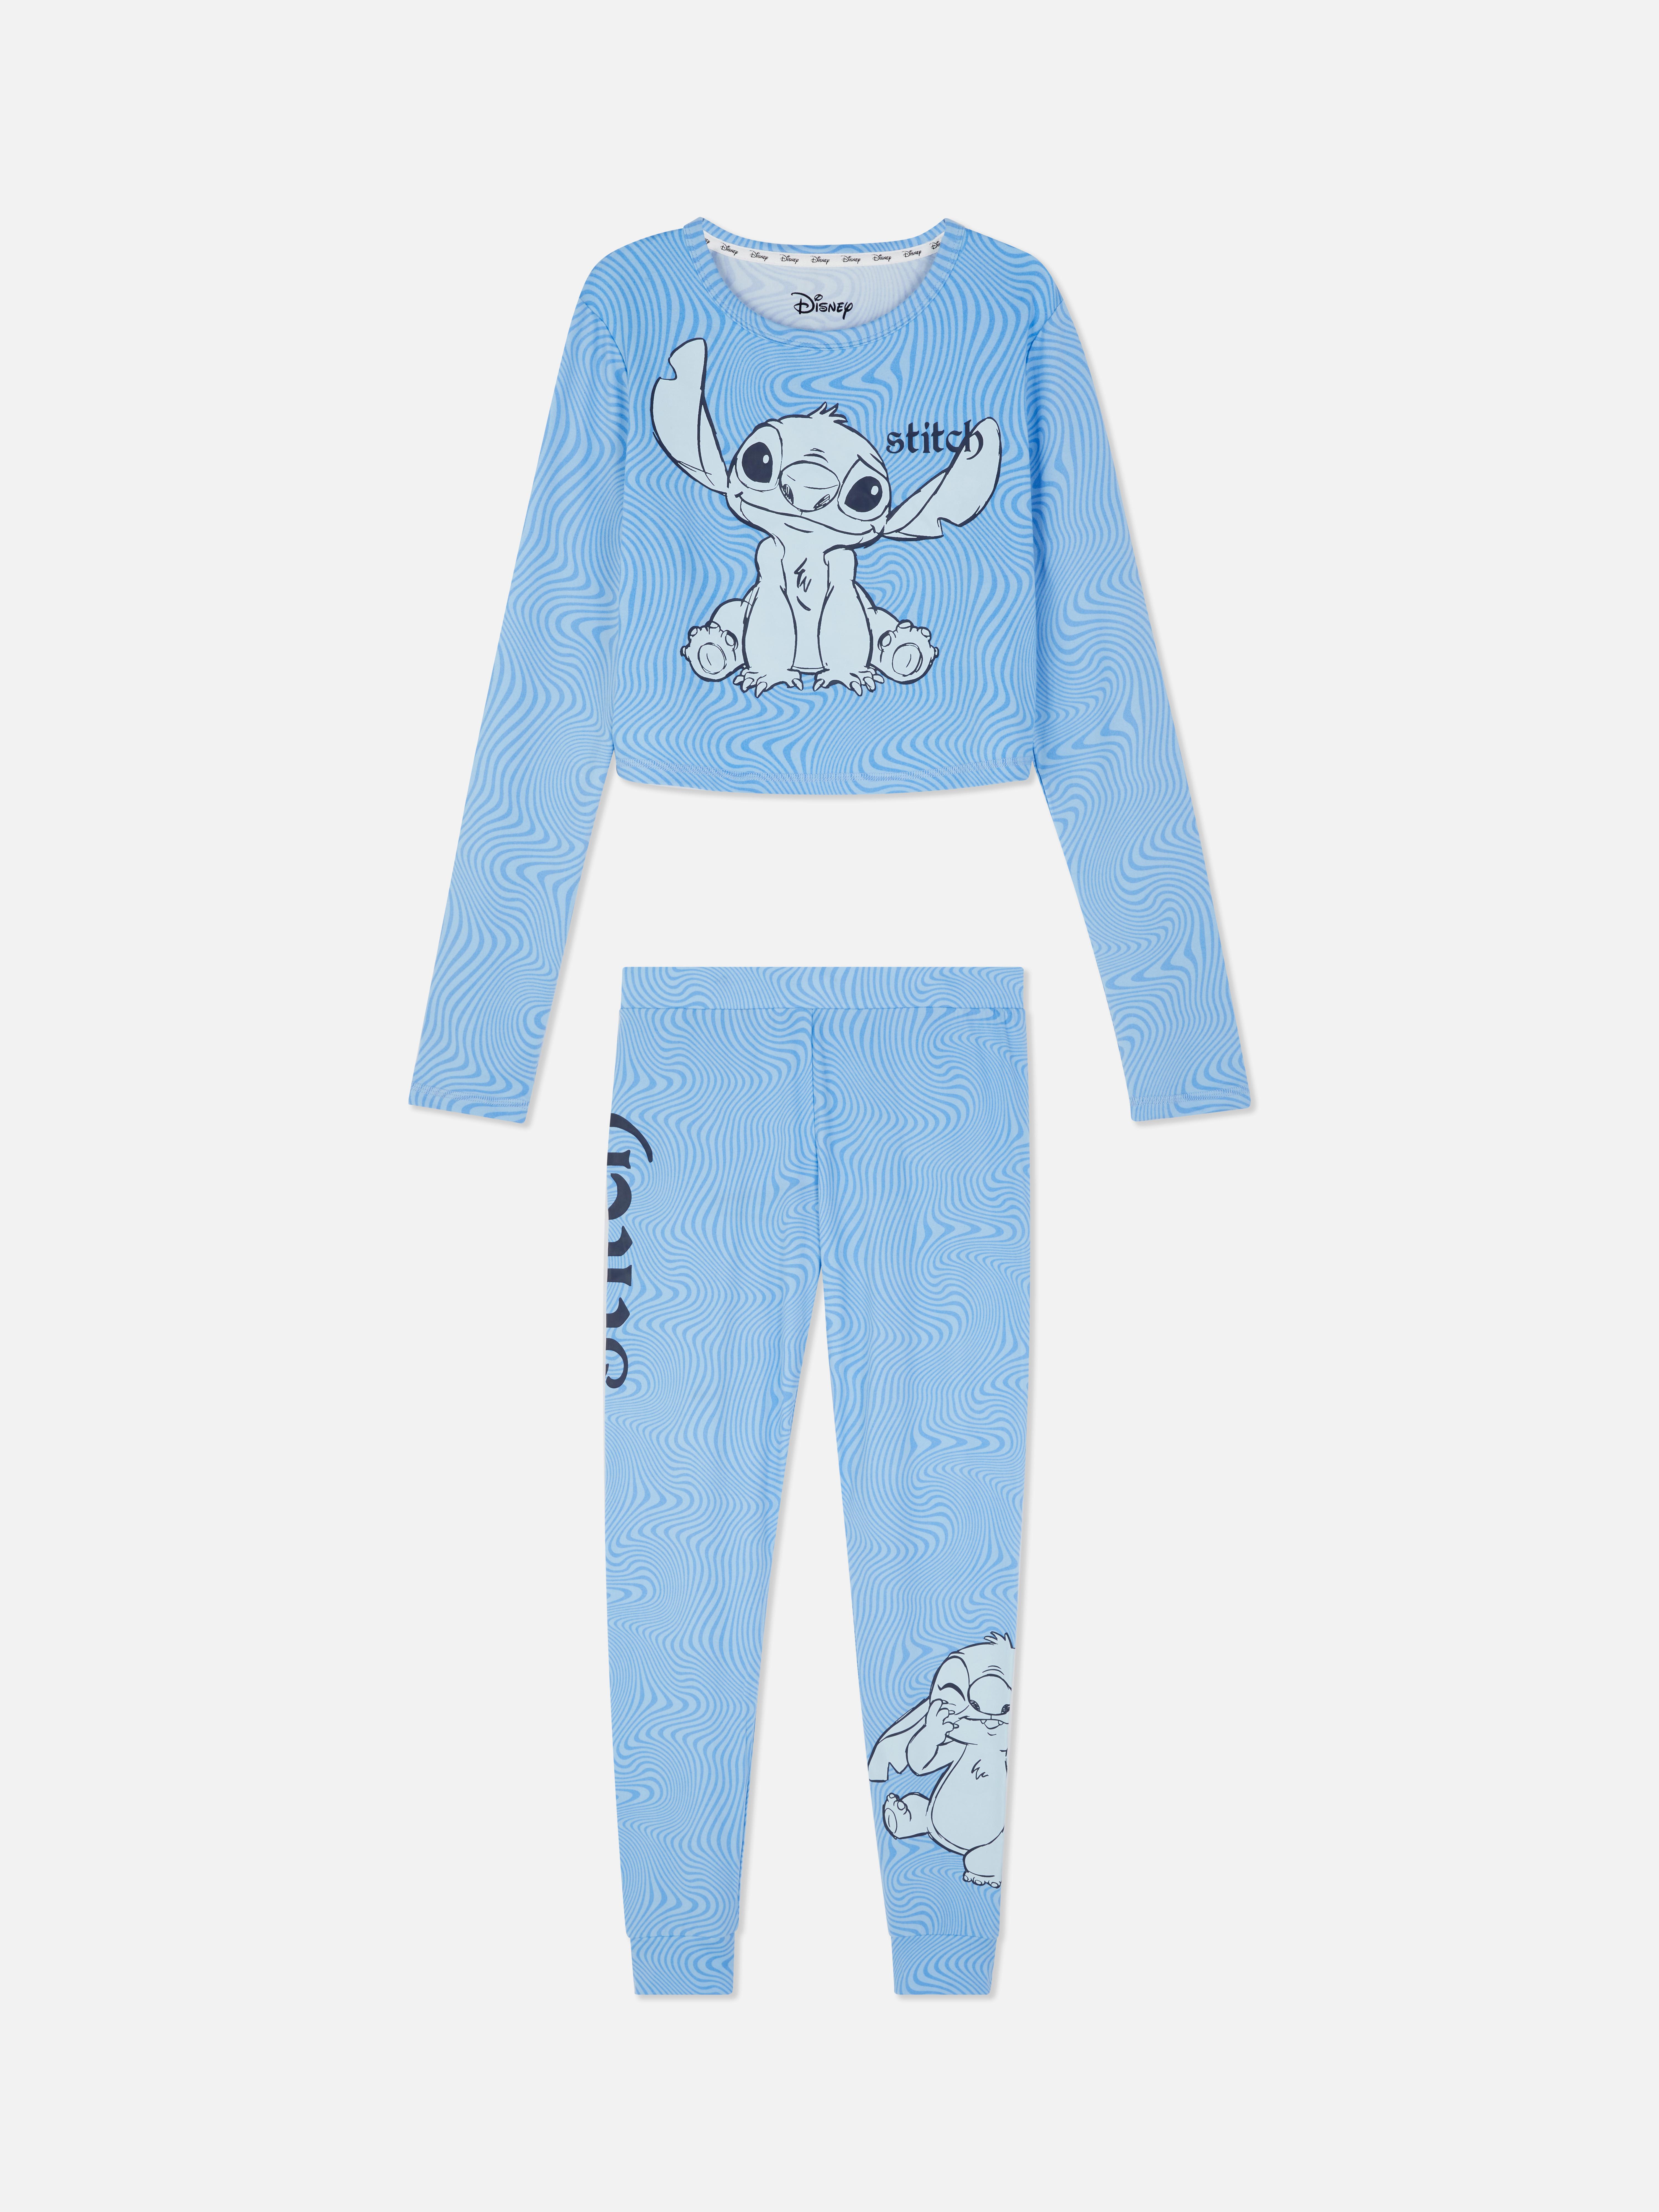 Disney’s Lilo & Stitch Pyjamas